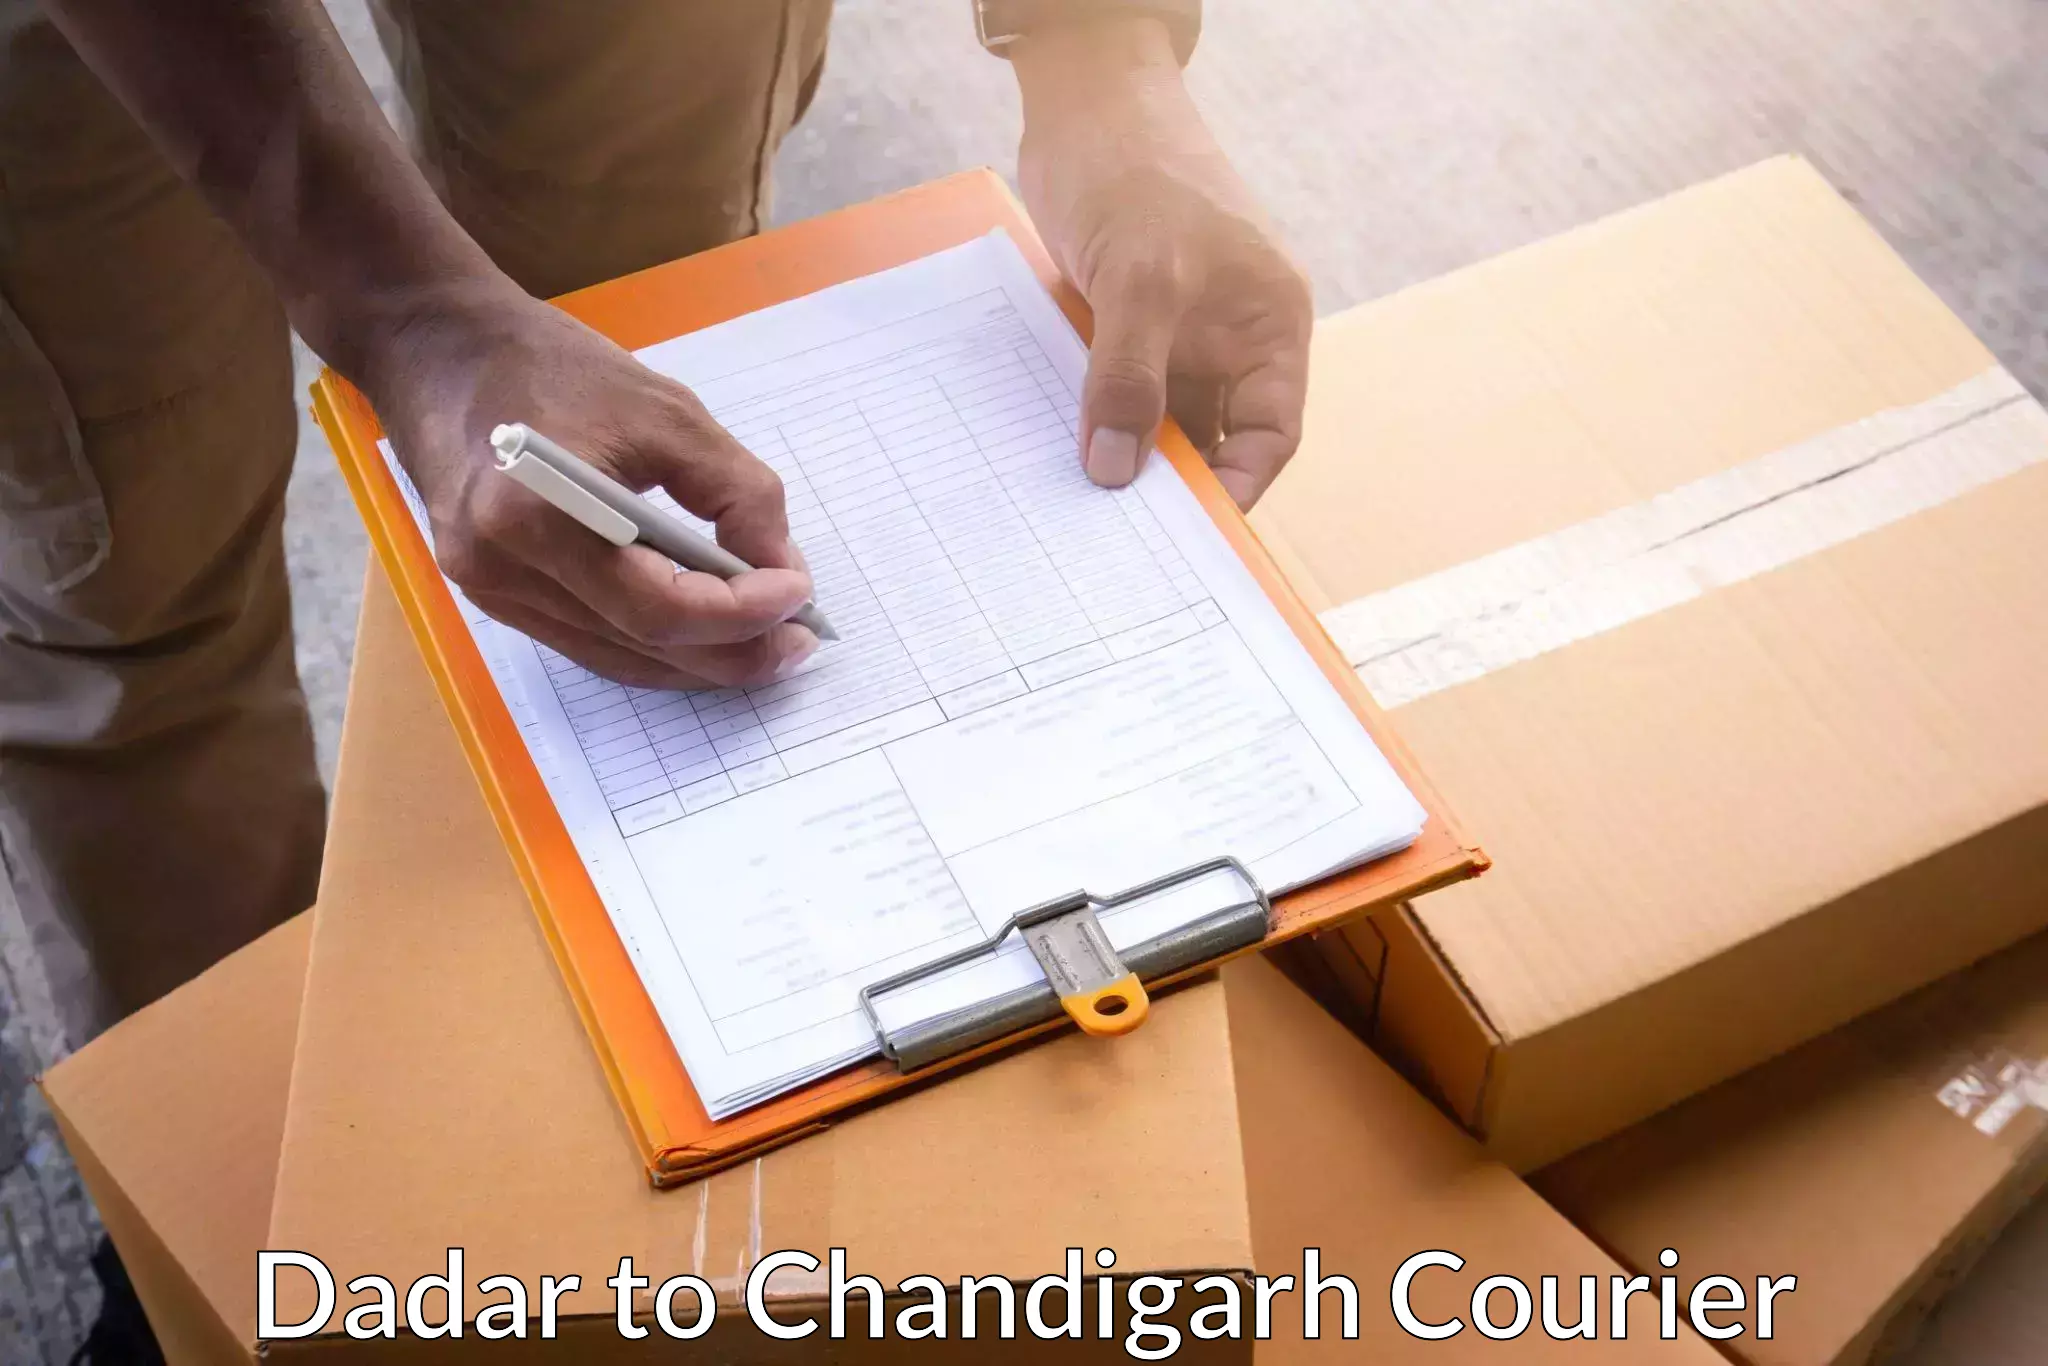 Premium delivery services Dadar to Chandigarh